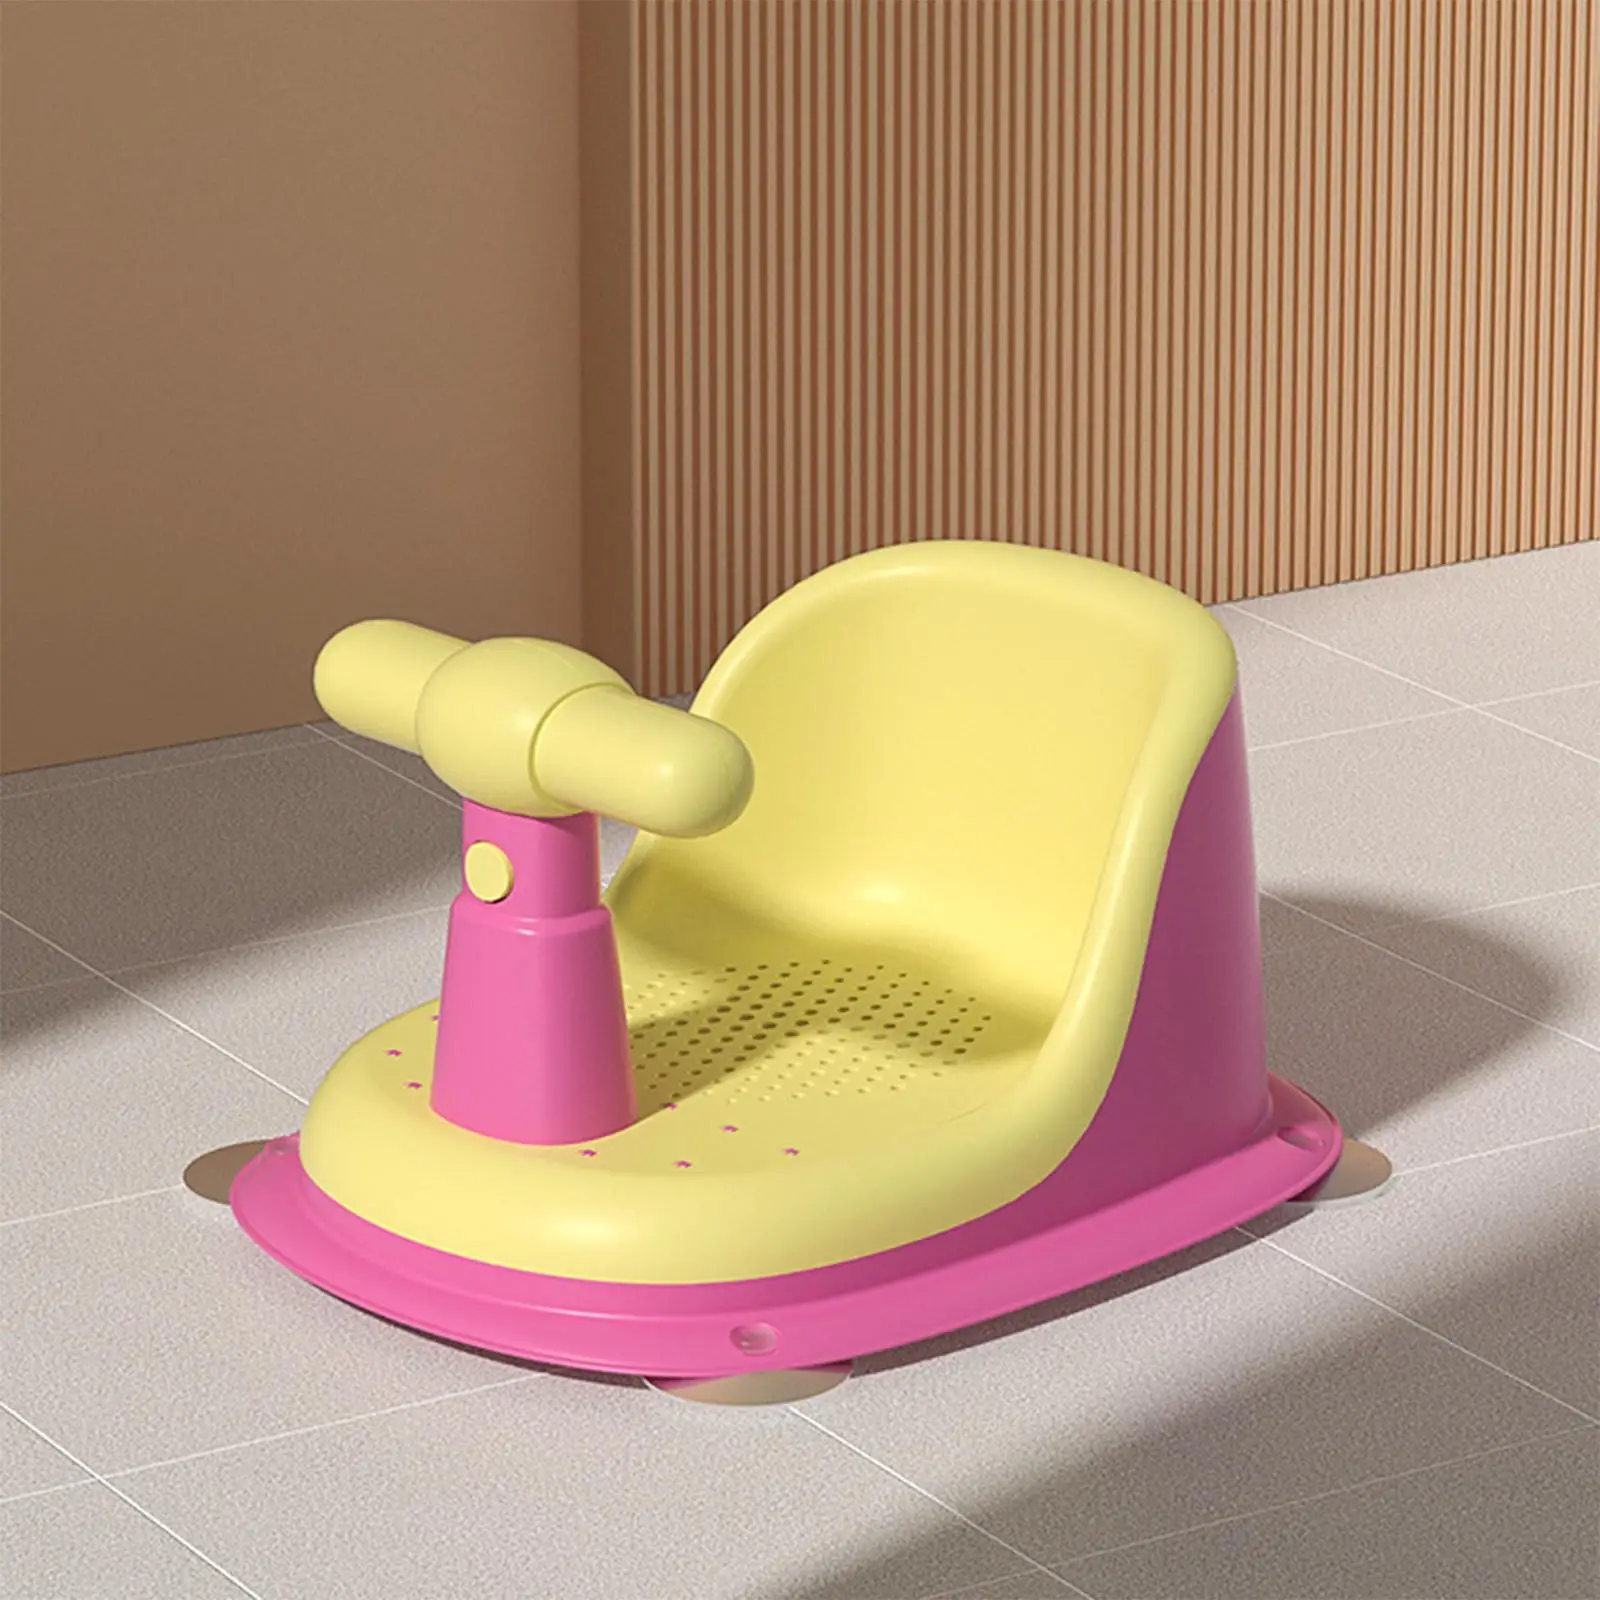 Baby Bath Seat Bath Tub Seat Bathtub Chair Suction for Girls 6-18 Months